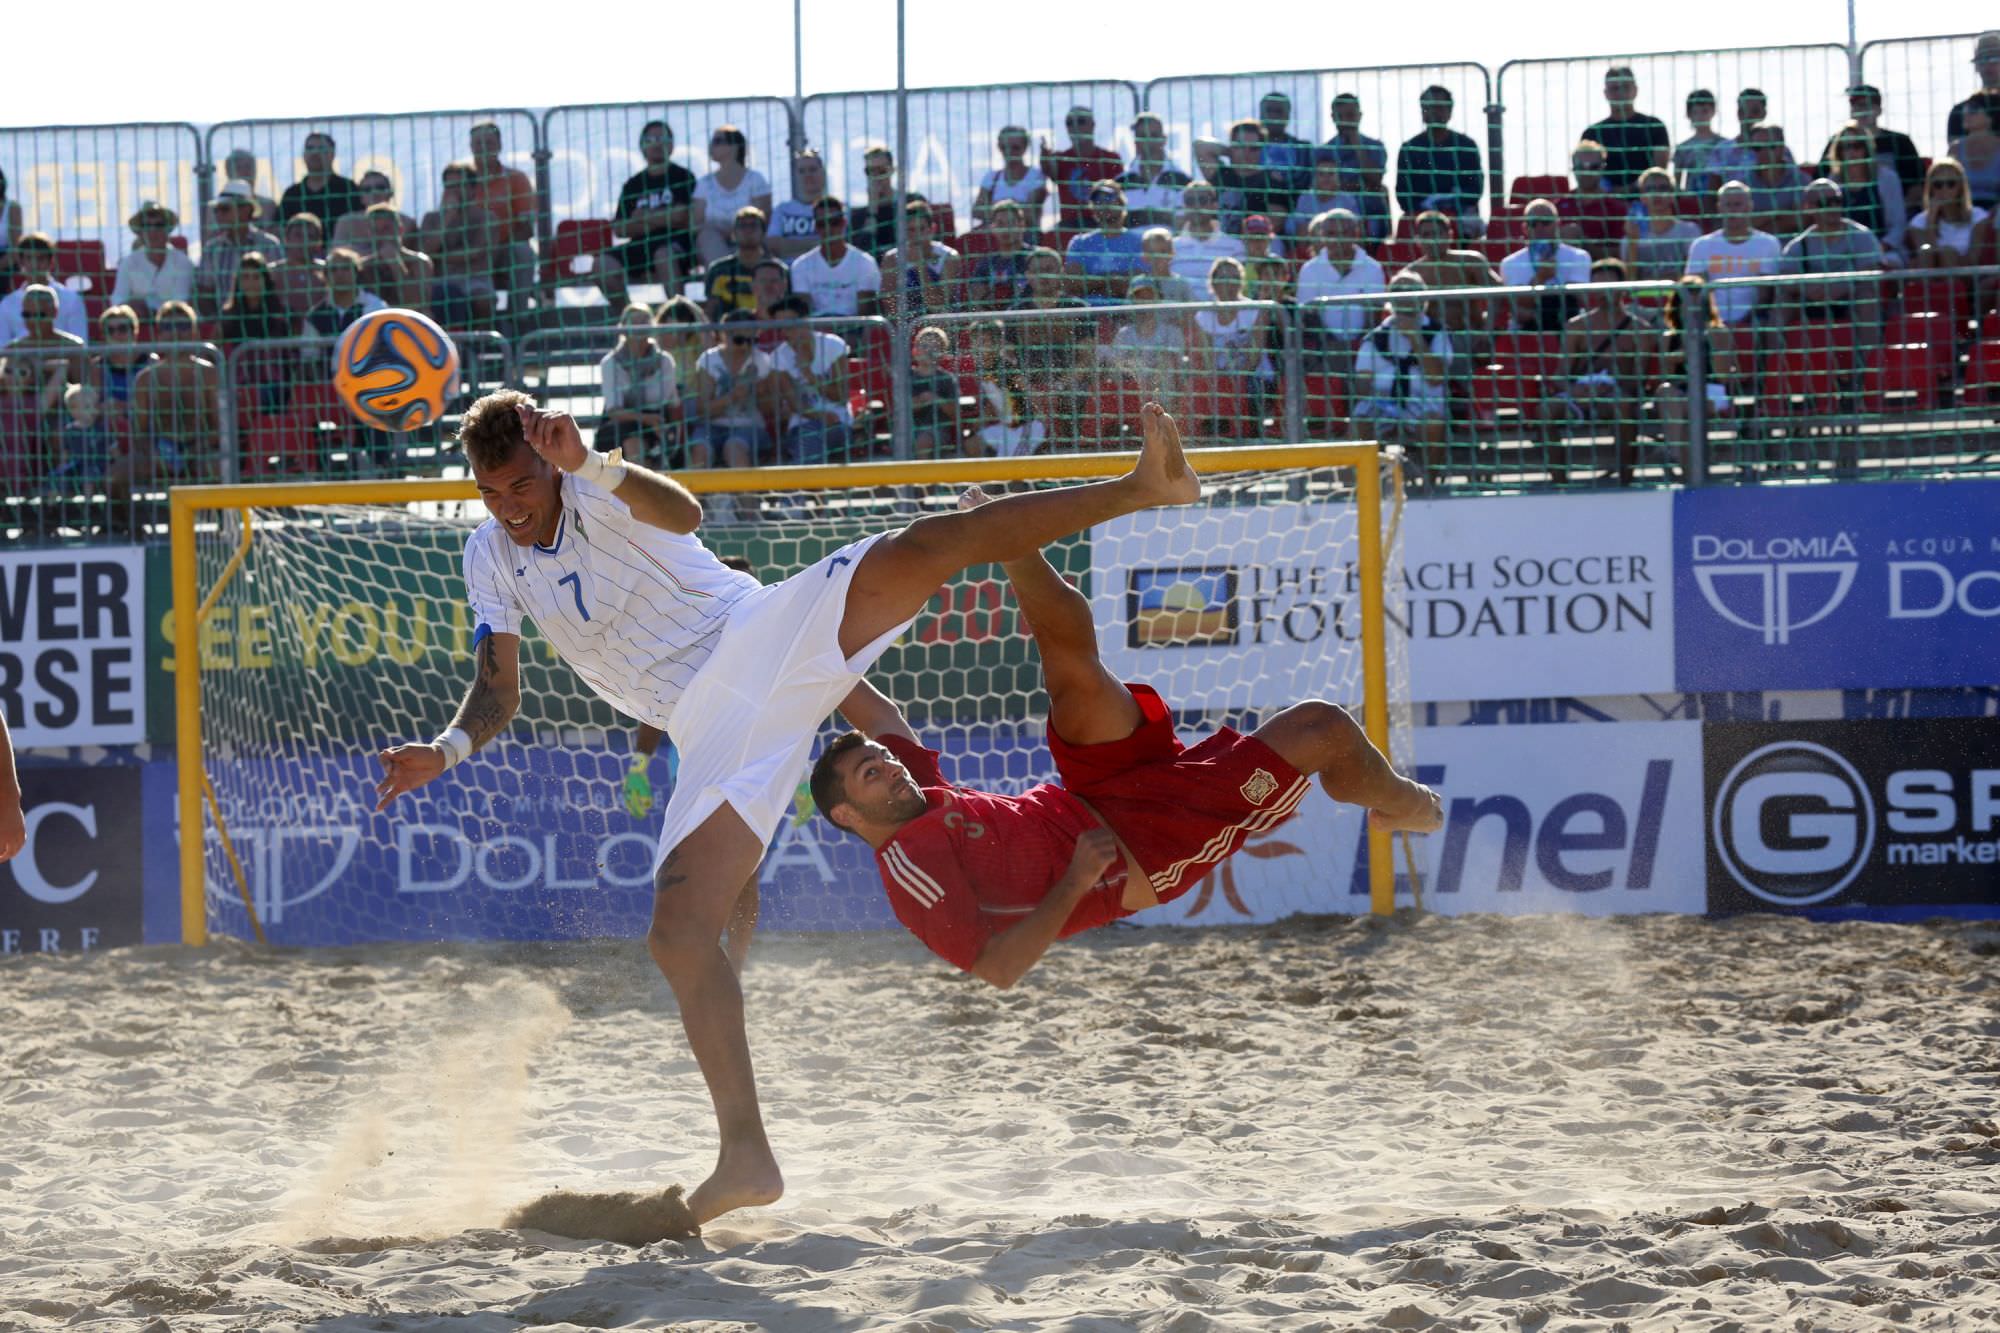 Italia terza alle qualificazioni mondiali di beach soccer. Ramacciotti mvp della tappa di Jesolo